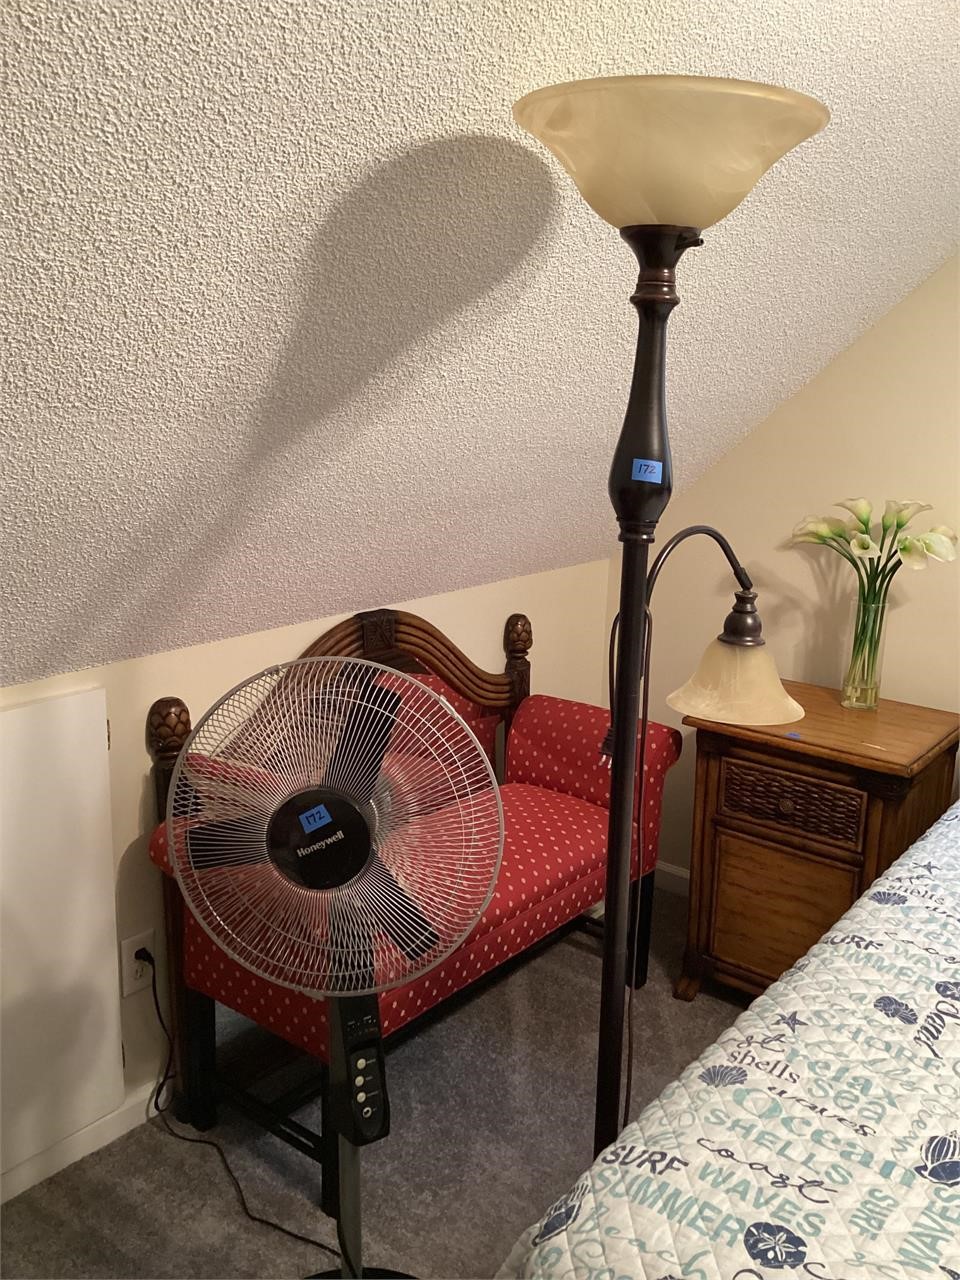 Floor lamp/stand fan